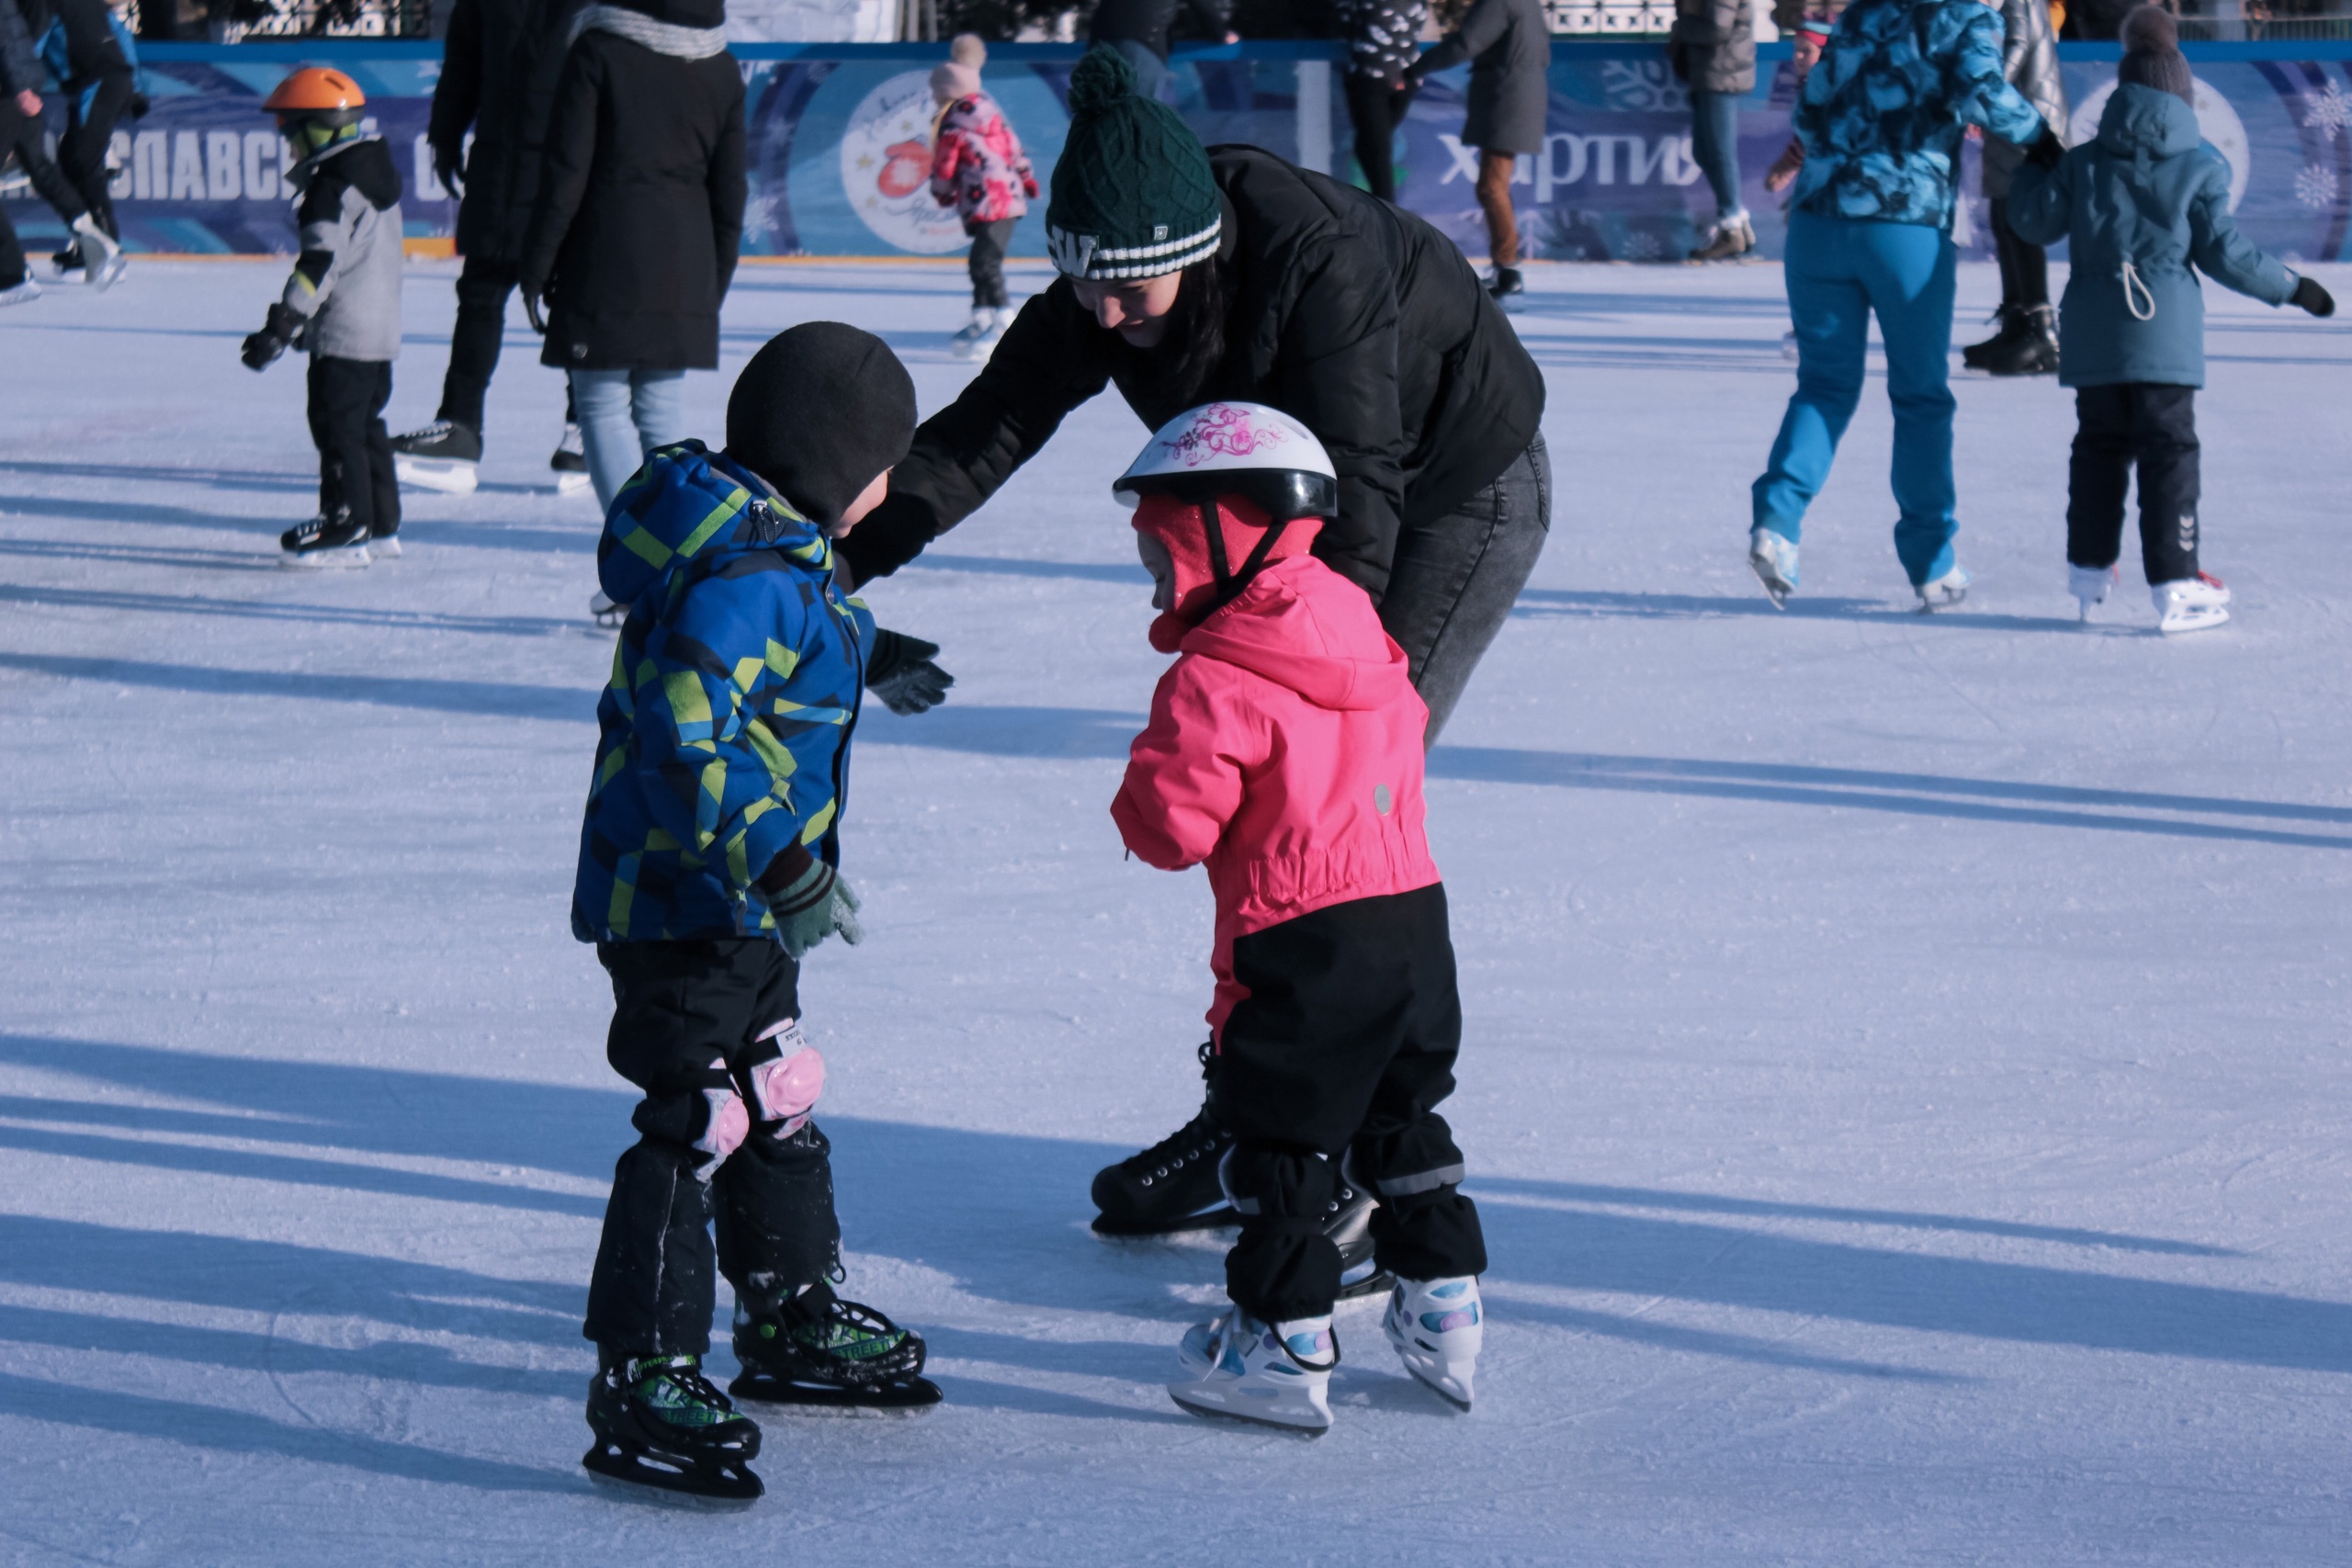 Йошкаролинцы могут бесплатно научиться кататься на коньках: расписание занятий